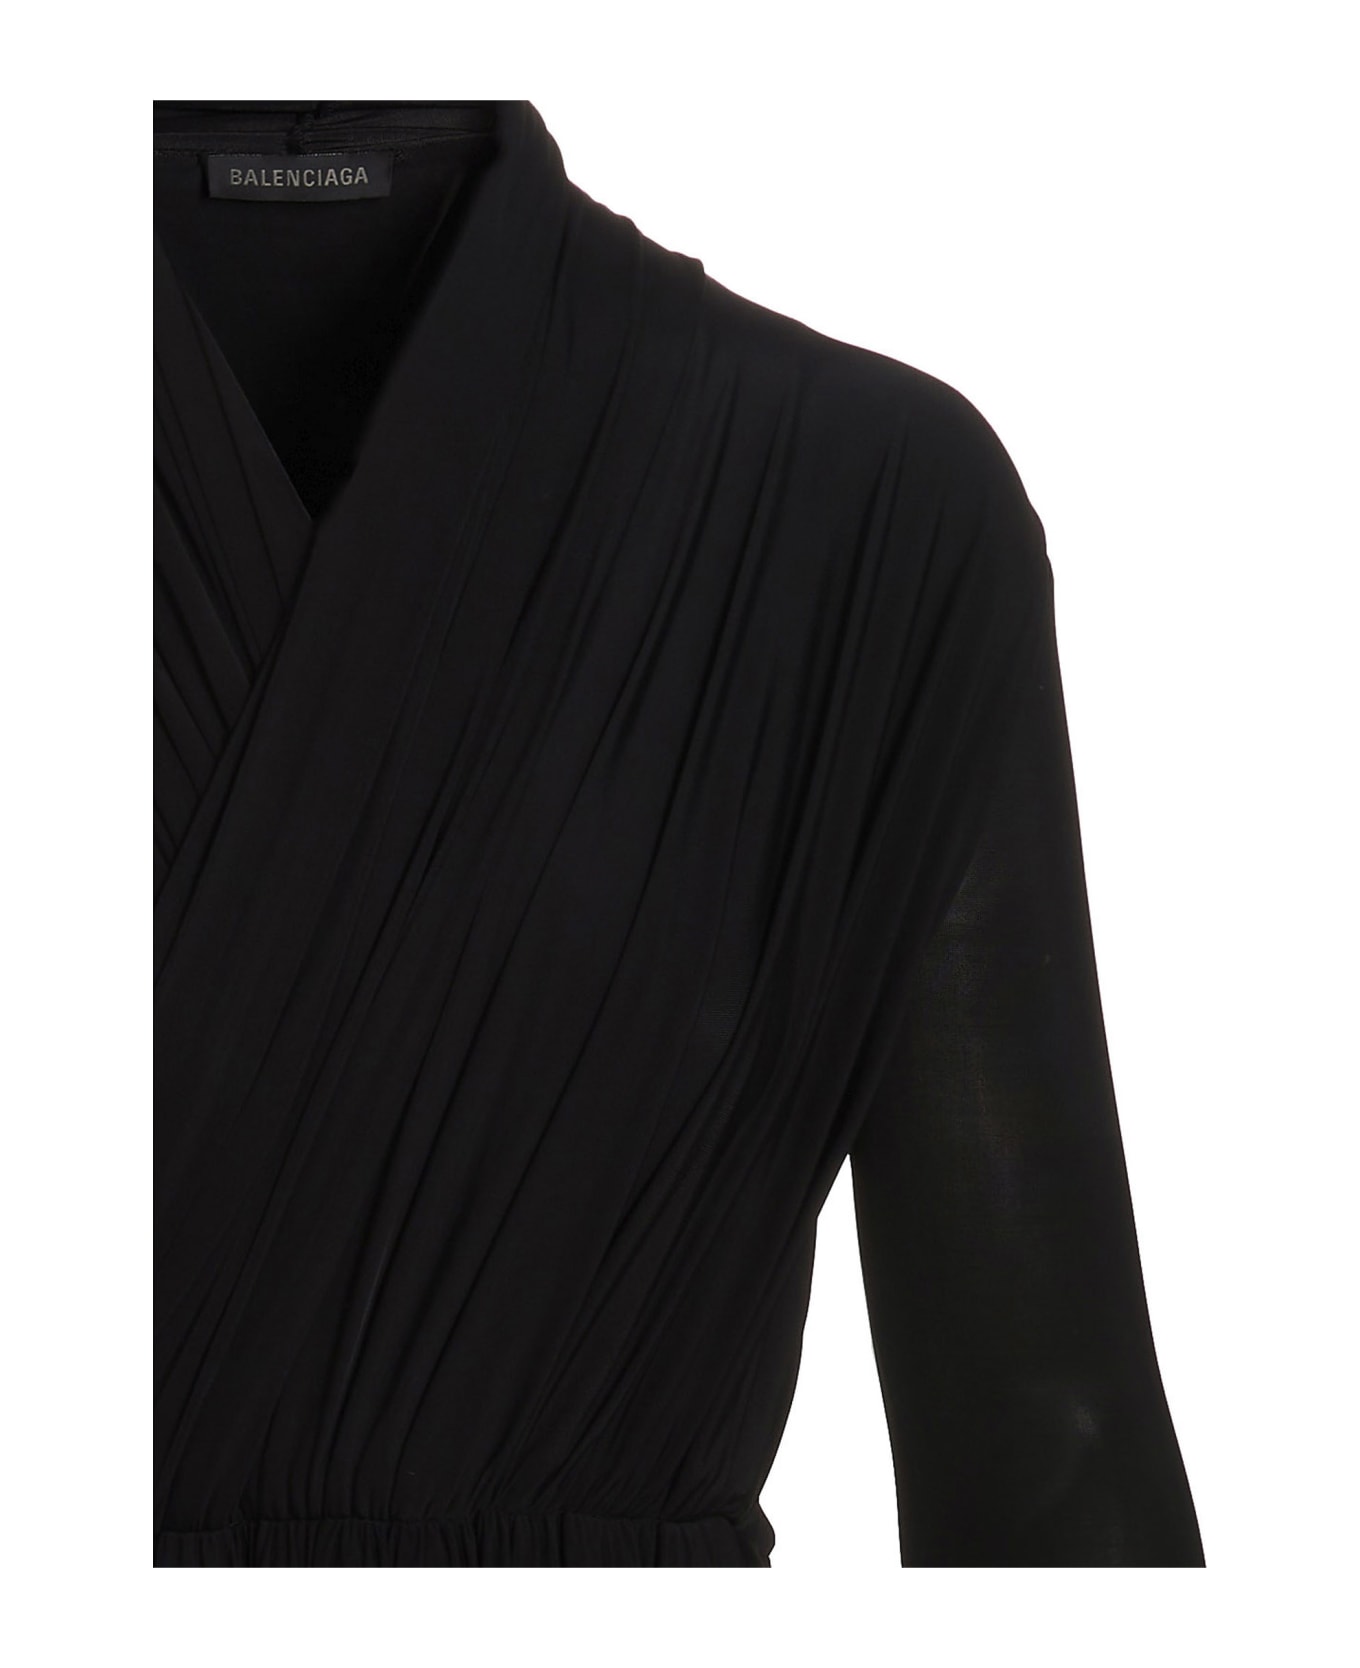 Balenciaga Stretch Stretch Insert Bodysuit - Black  